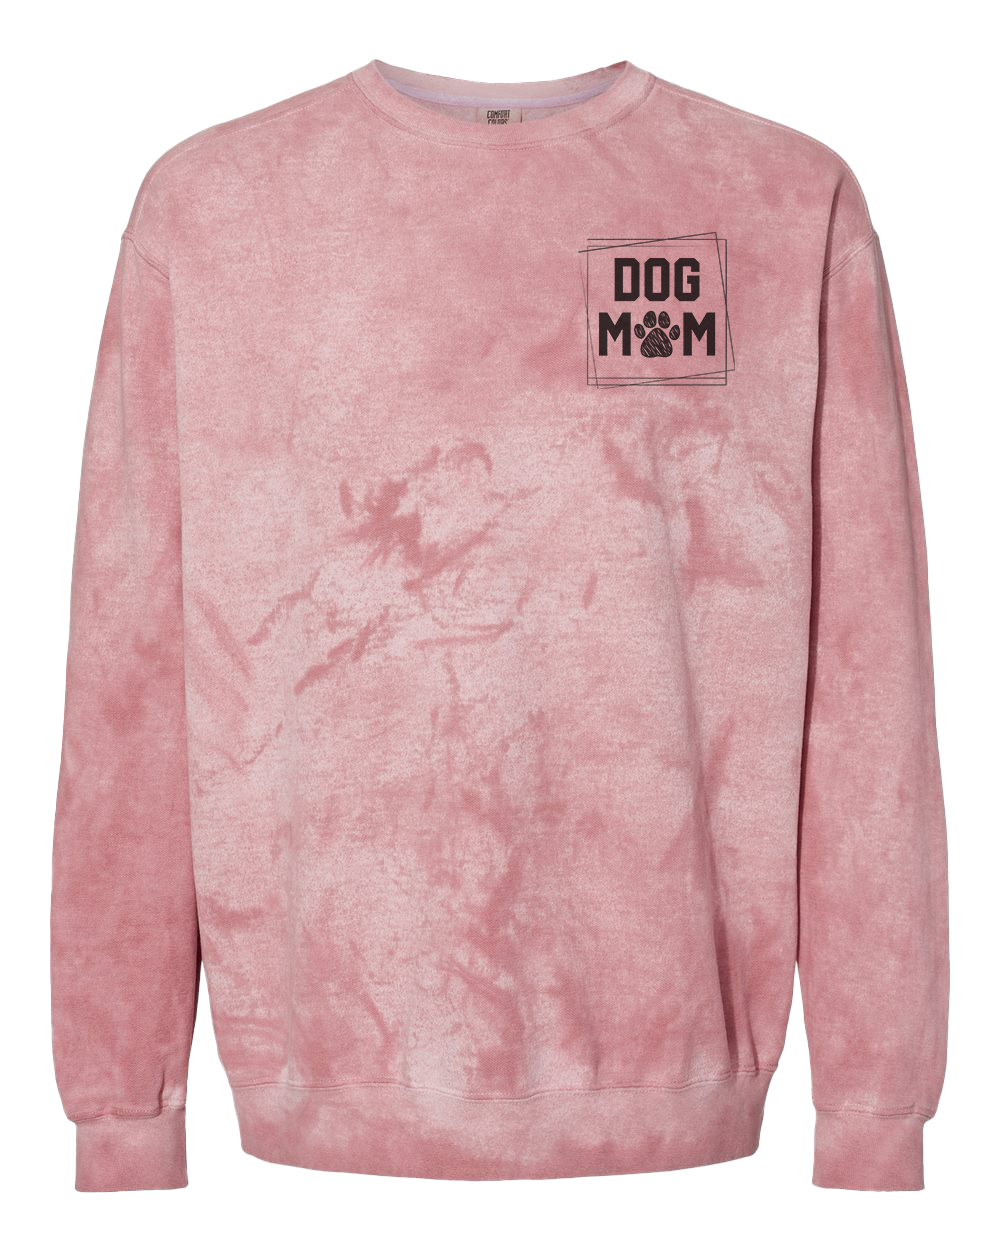 Dog Mom Crew Sweatshirt - Clay